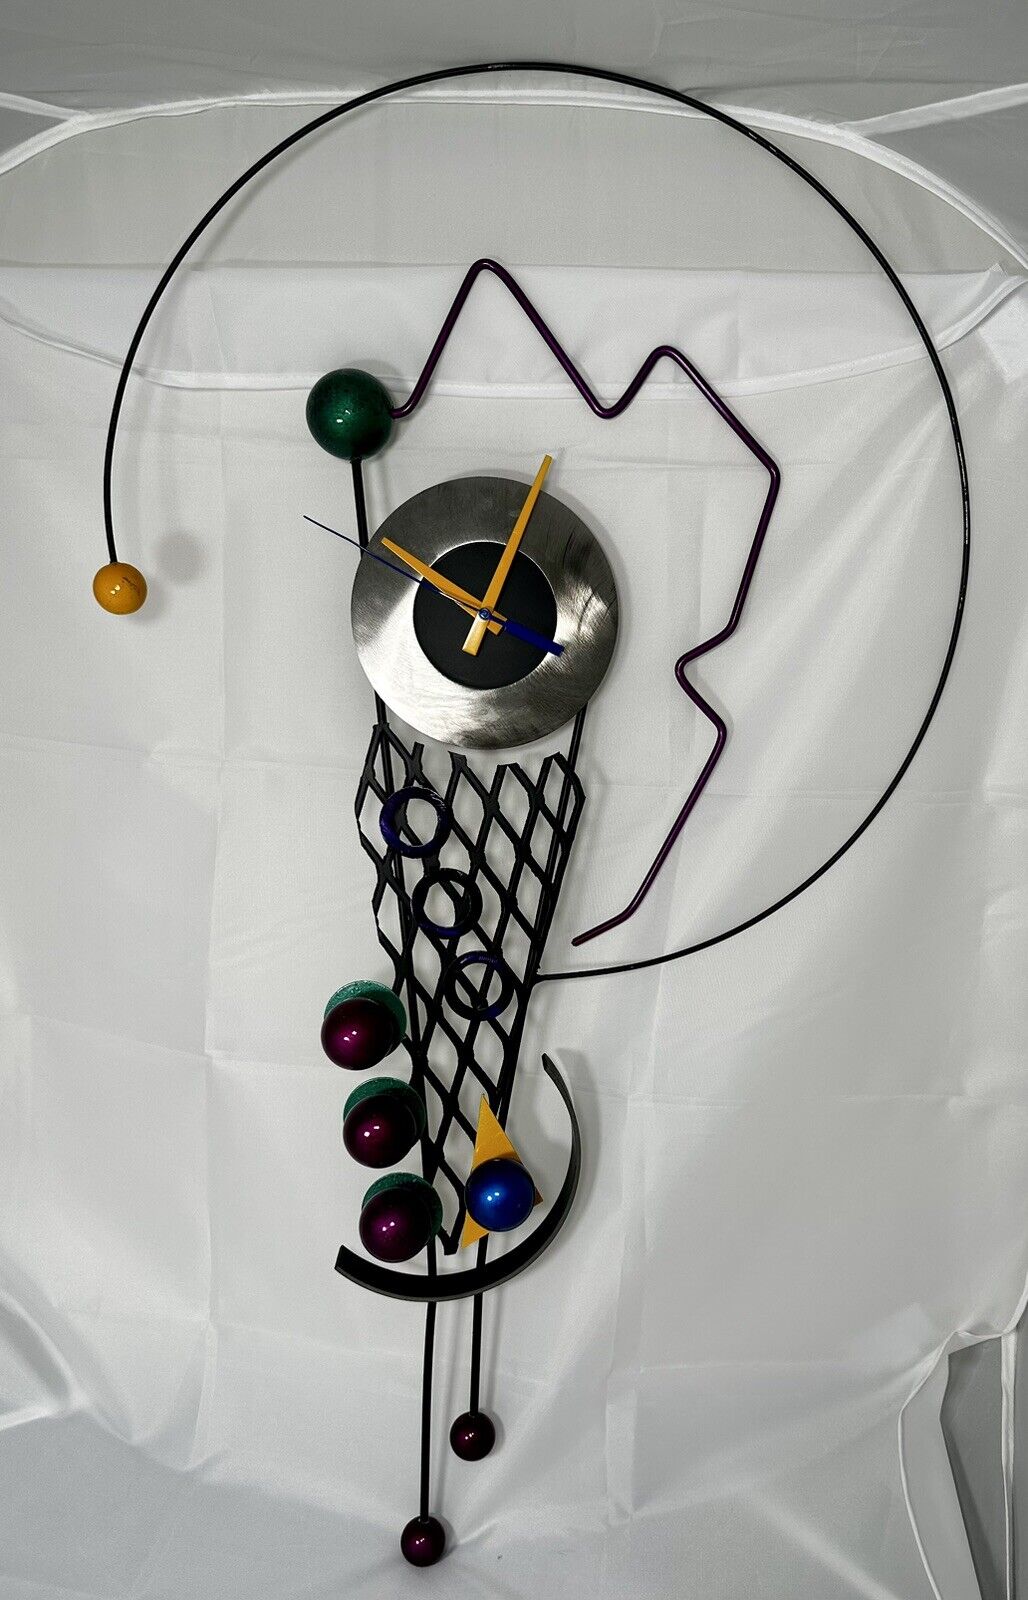 Rick Martin 1996 Abstract Modernist Pop Art Memphis Style Clock